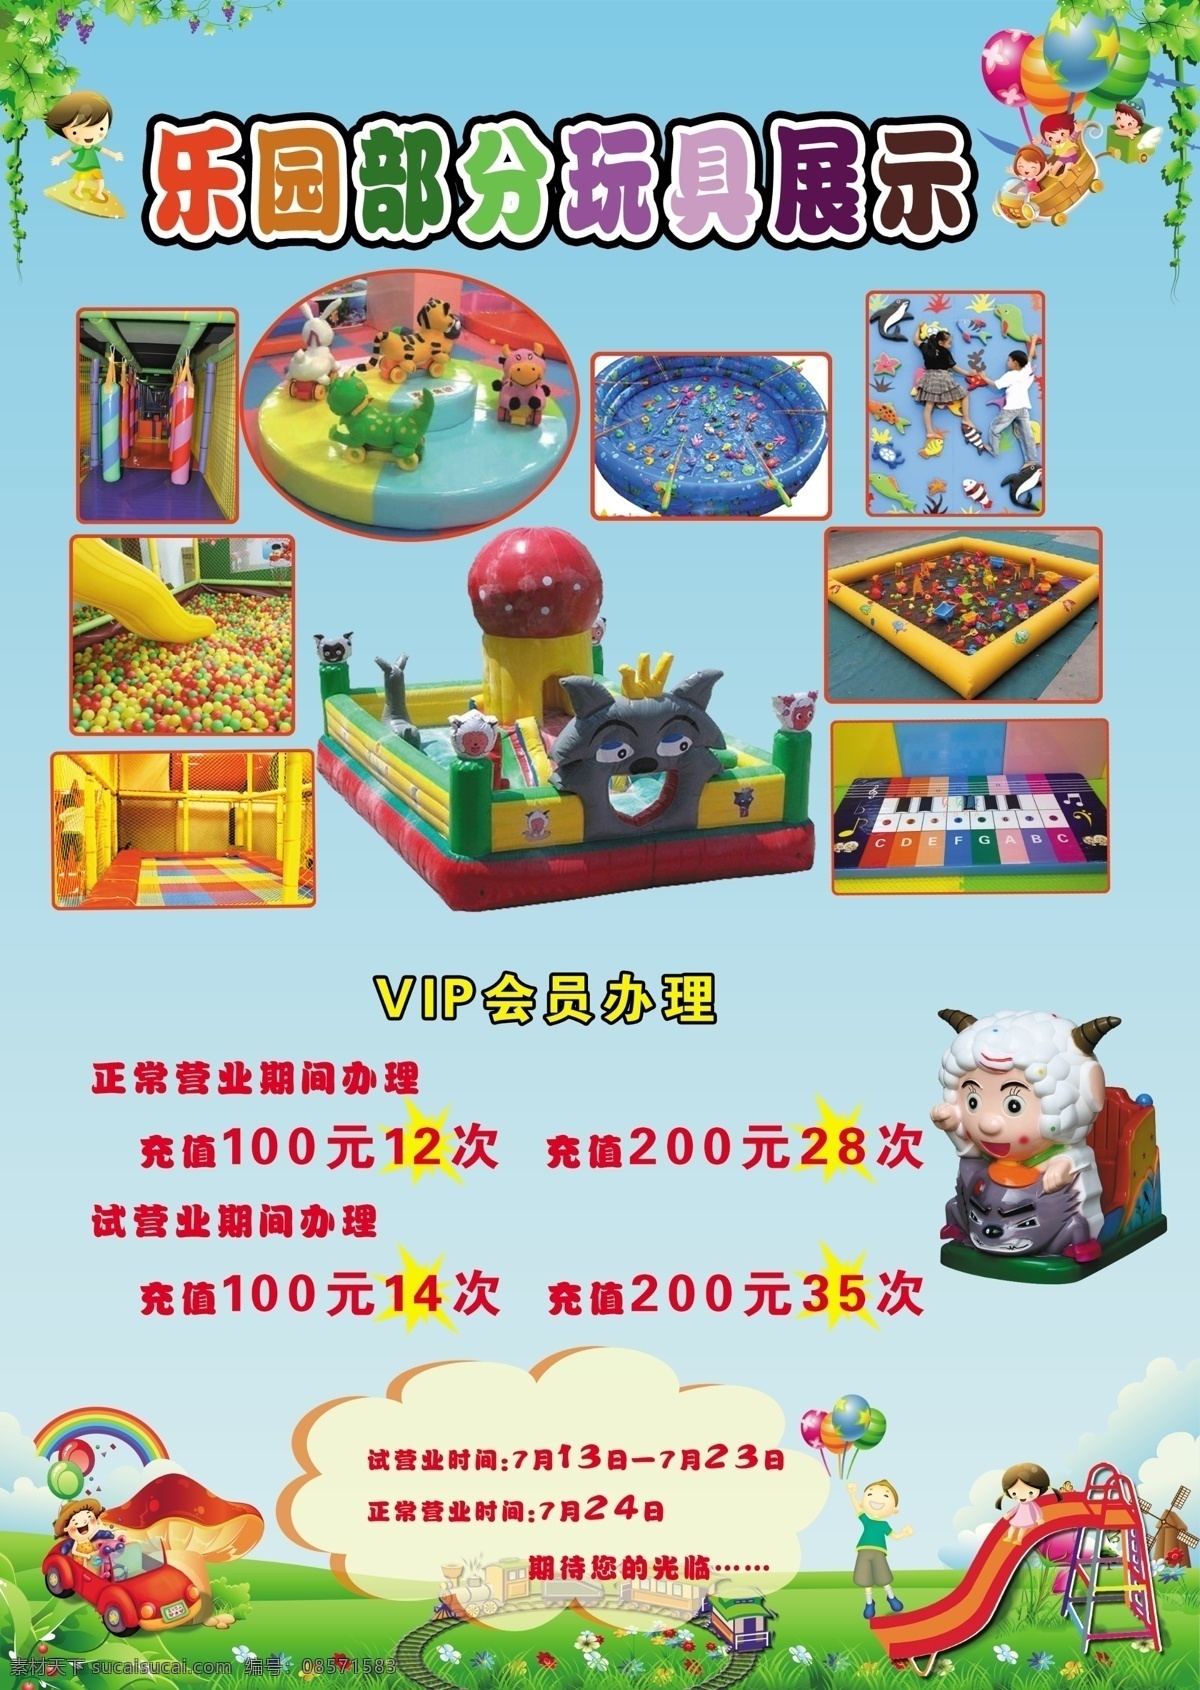 儿童 儿童乐园 广告设计模板 卡通 乐园 玩具 源文件 模板下载 psd源文件